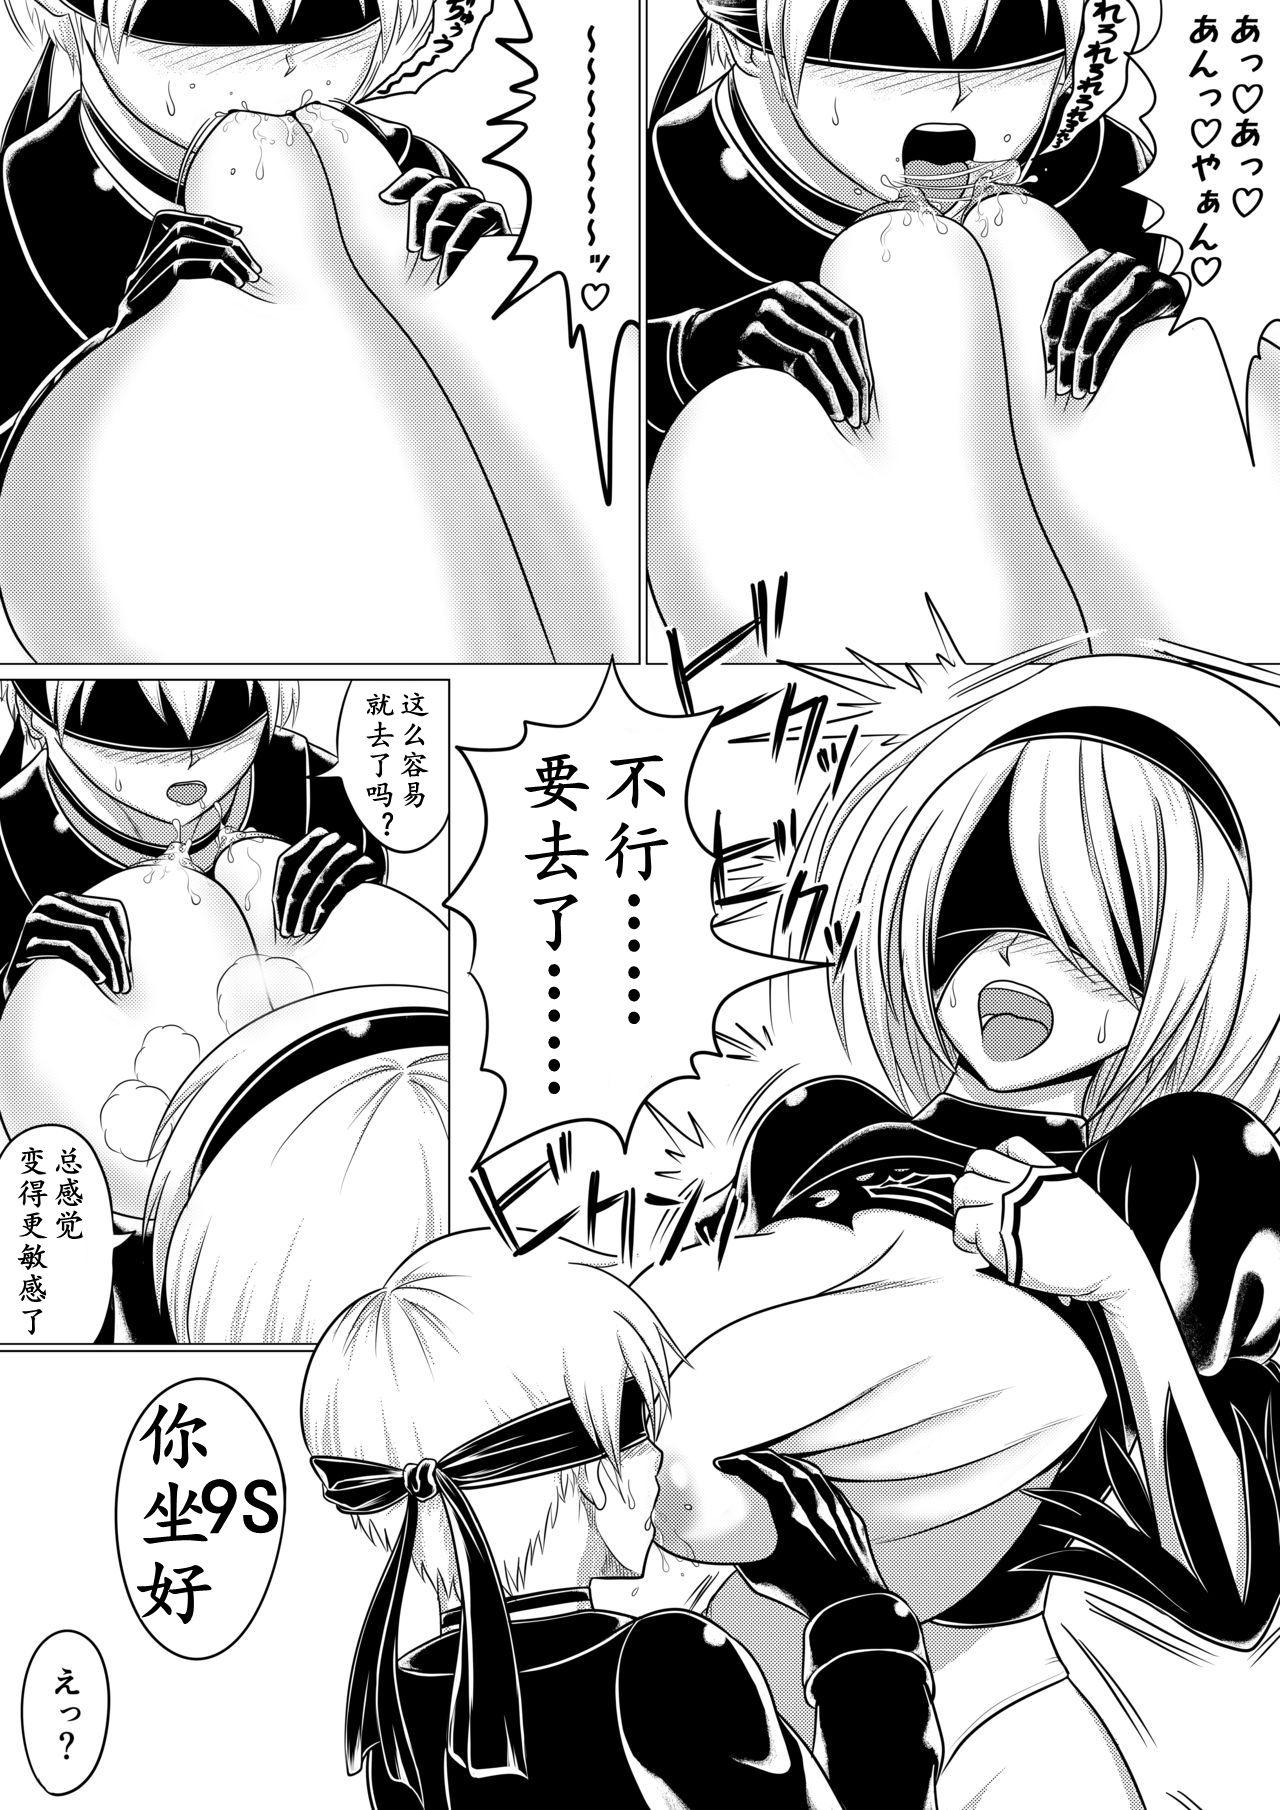 Blow Job Automata Manga Oppai Hen - Nier automata The - Page 4